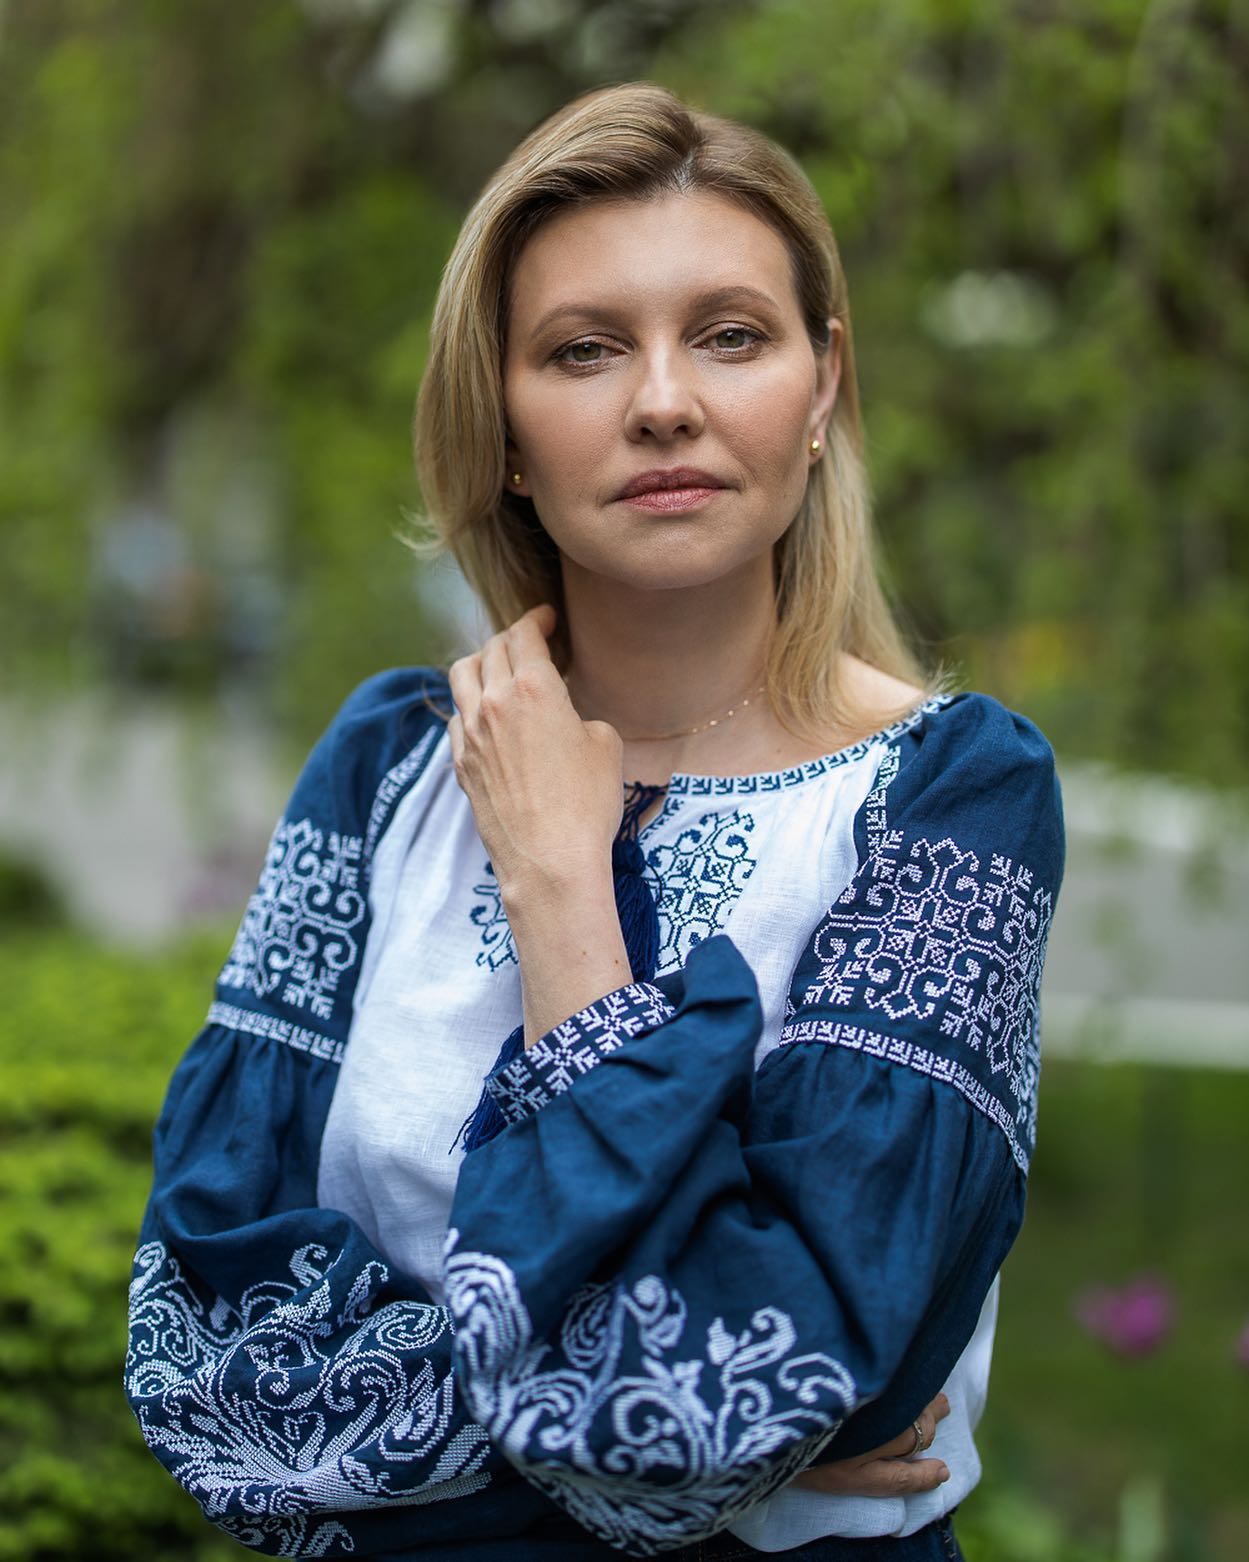 Чистая и невинная красота: Елена Зеленская очаровала новым фото в синей вышиванке